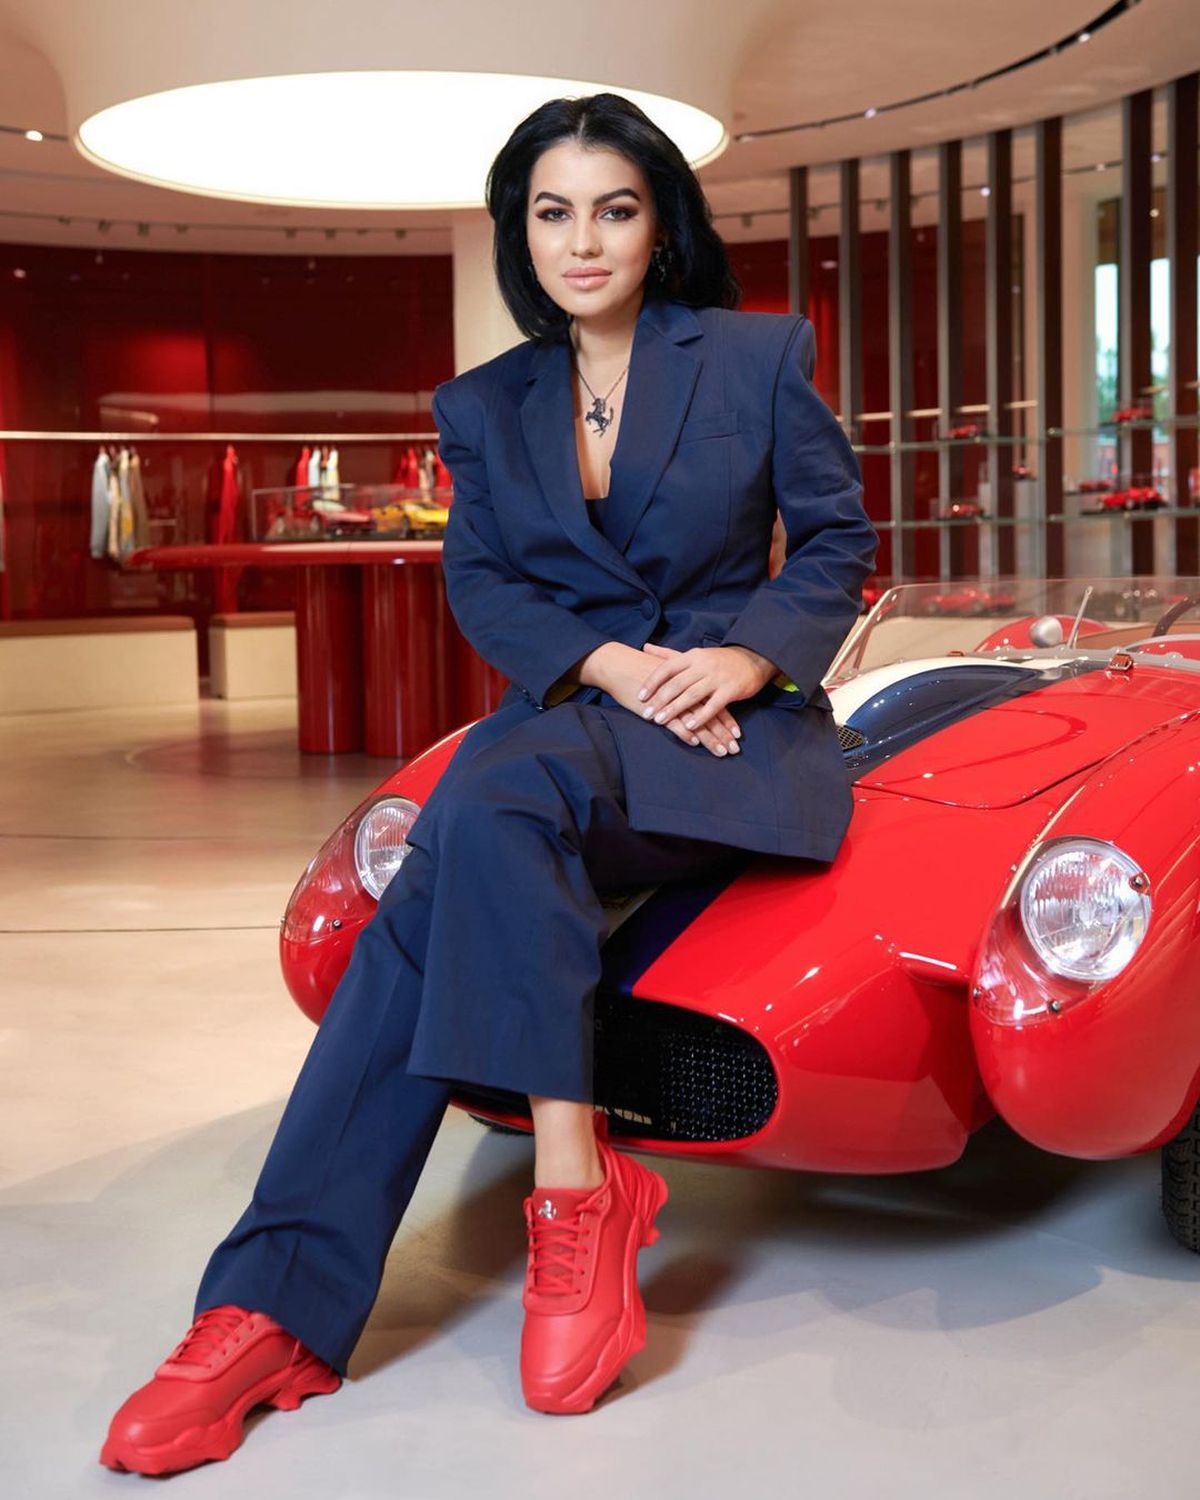 Soția româncă a moștenitorului Ferrari a făcut furori la prima cursă de Formula 1! Cum au surprins-o fotoreporterii in Bahrain